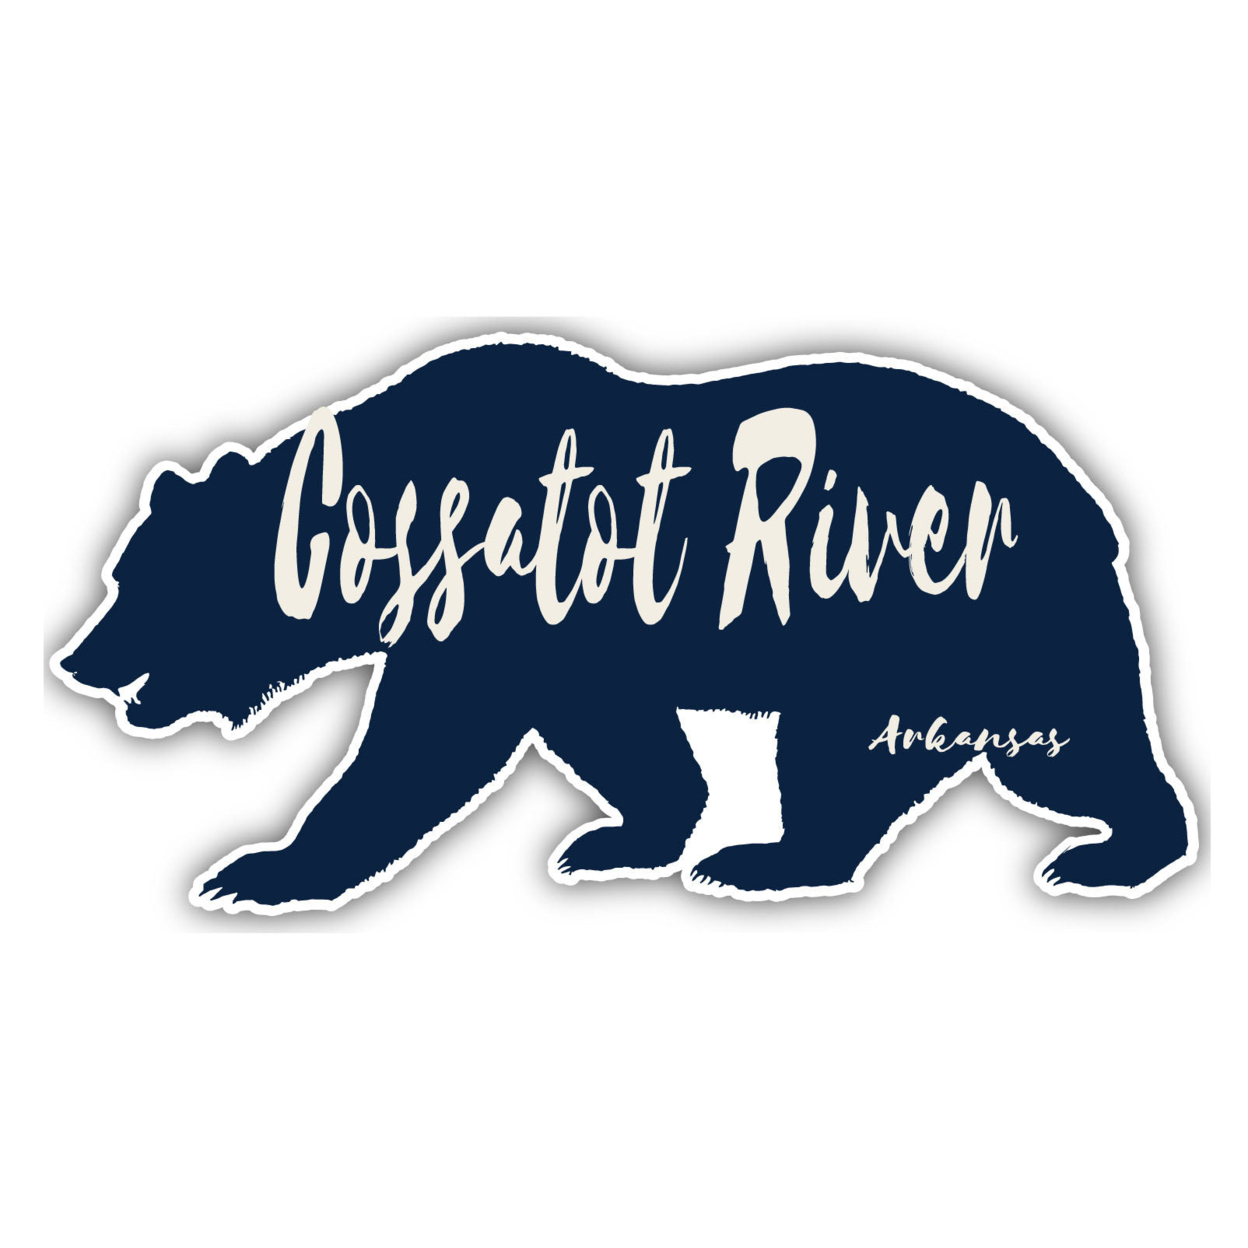 Cossatot River Arkansas Souvenir Decorative Stickers (Choose Theme And Size) - Single Unit, 4-Inch, Bear